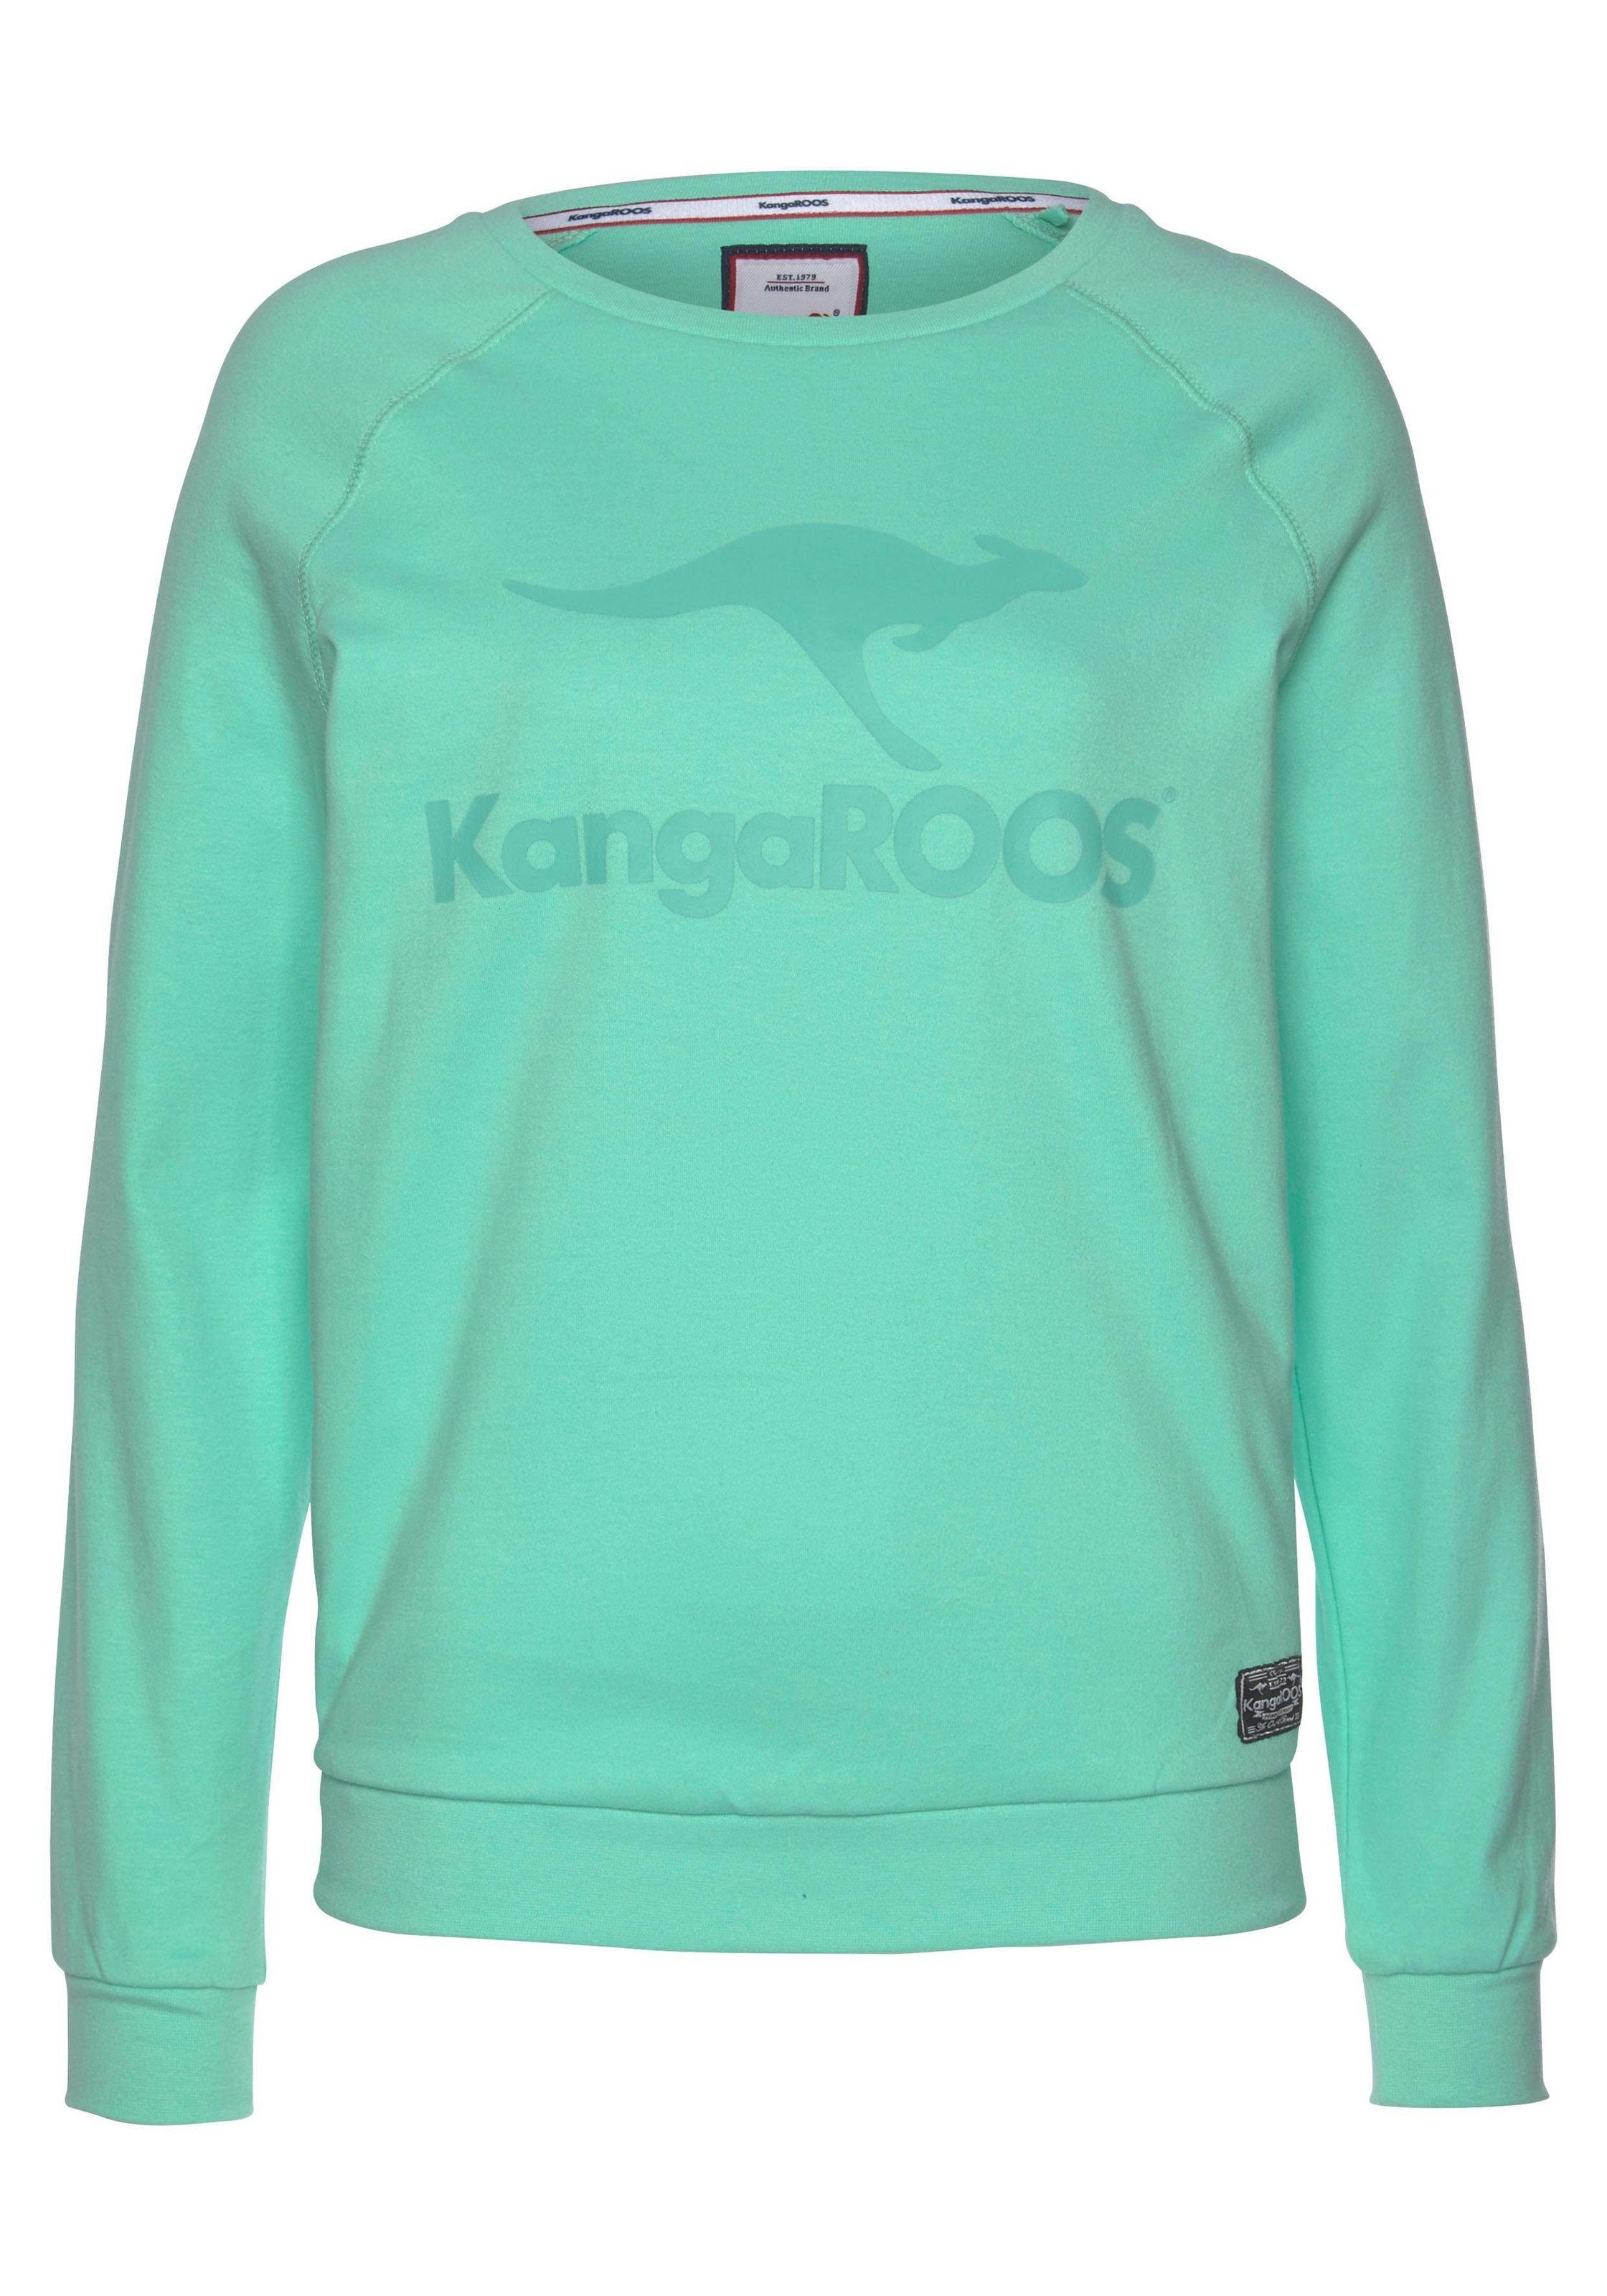 KangaROOS Sweater, mit grossem Label-Print vorne